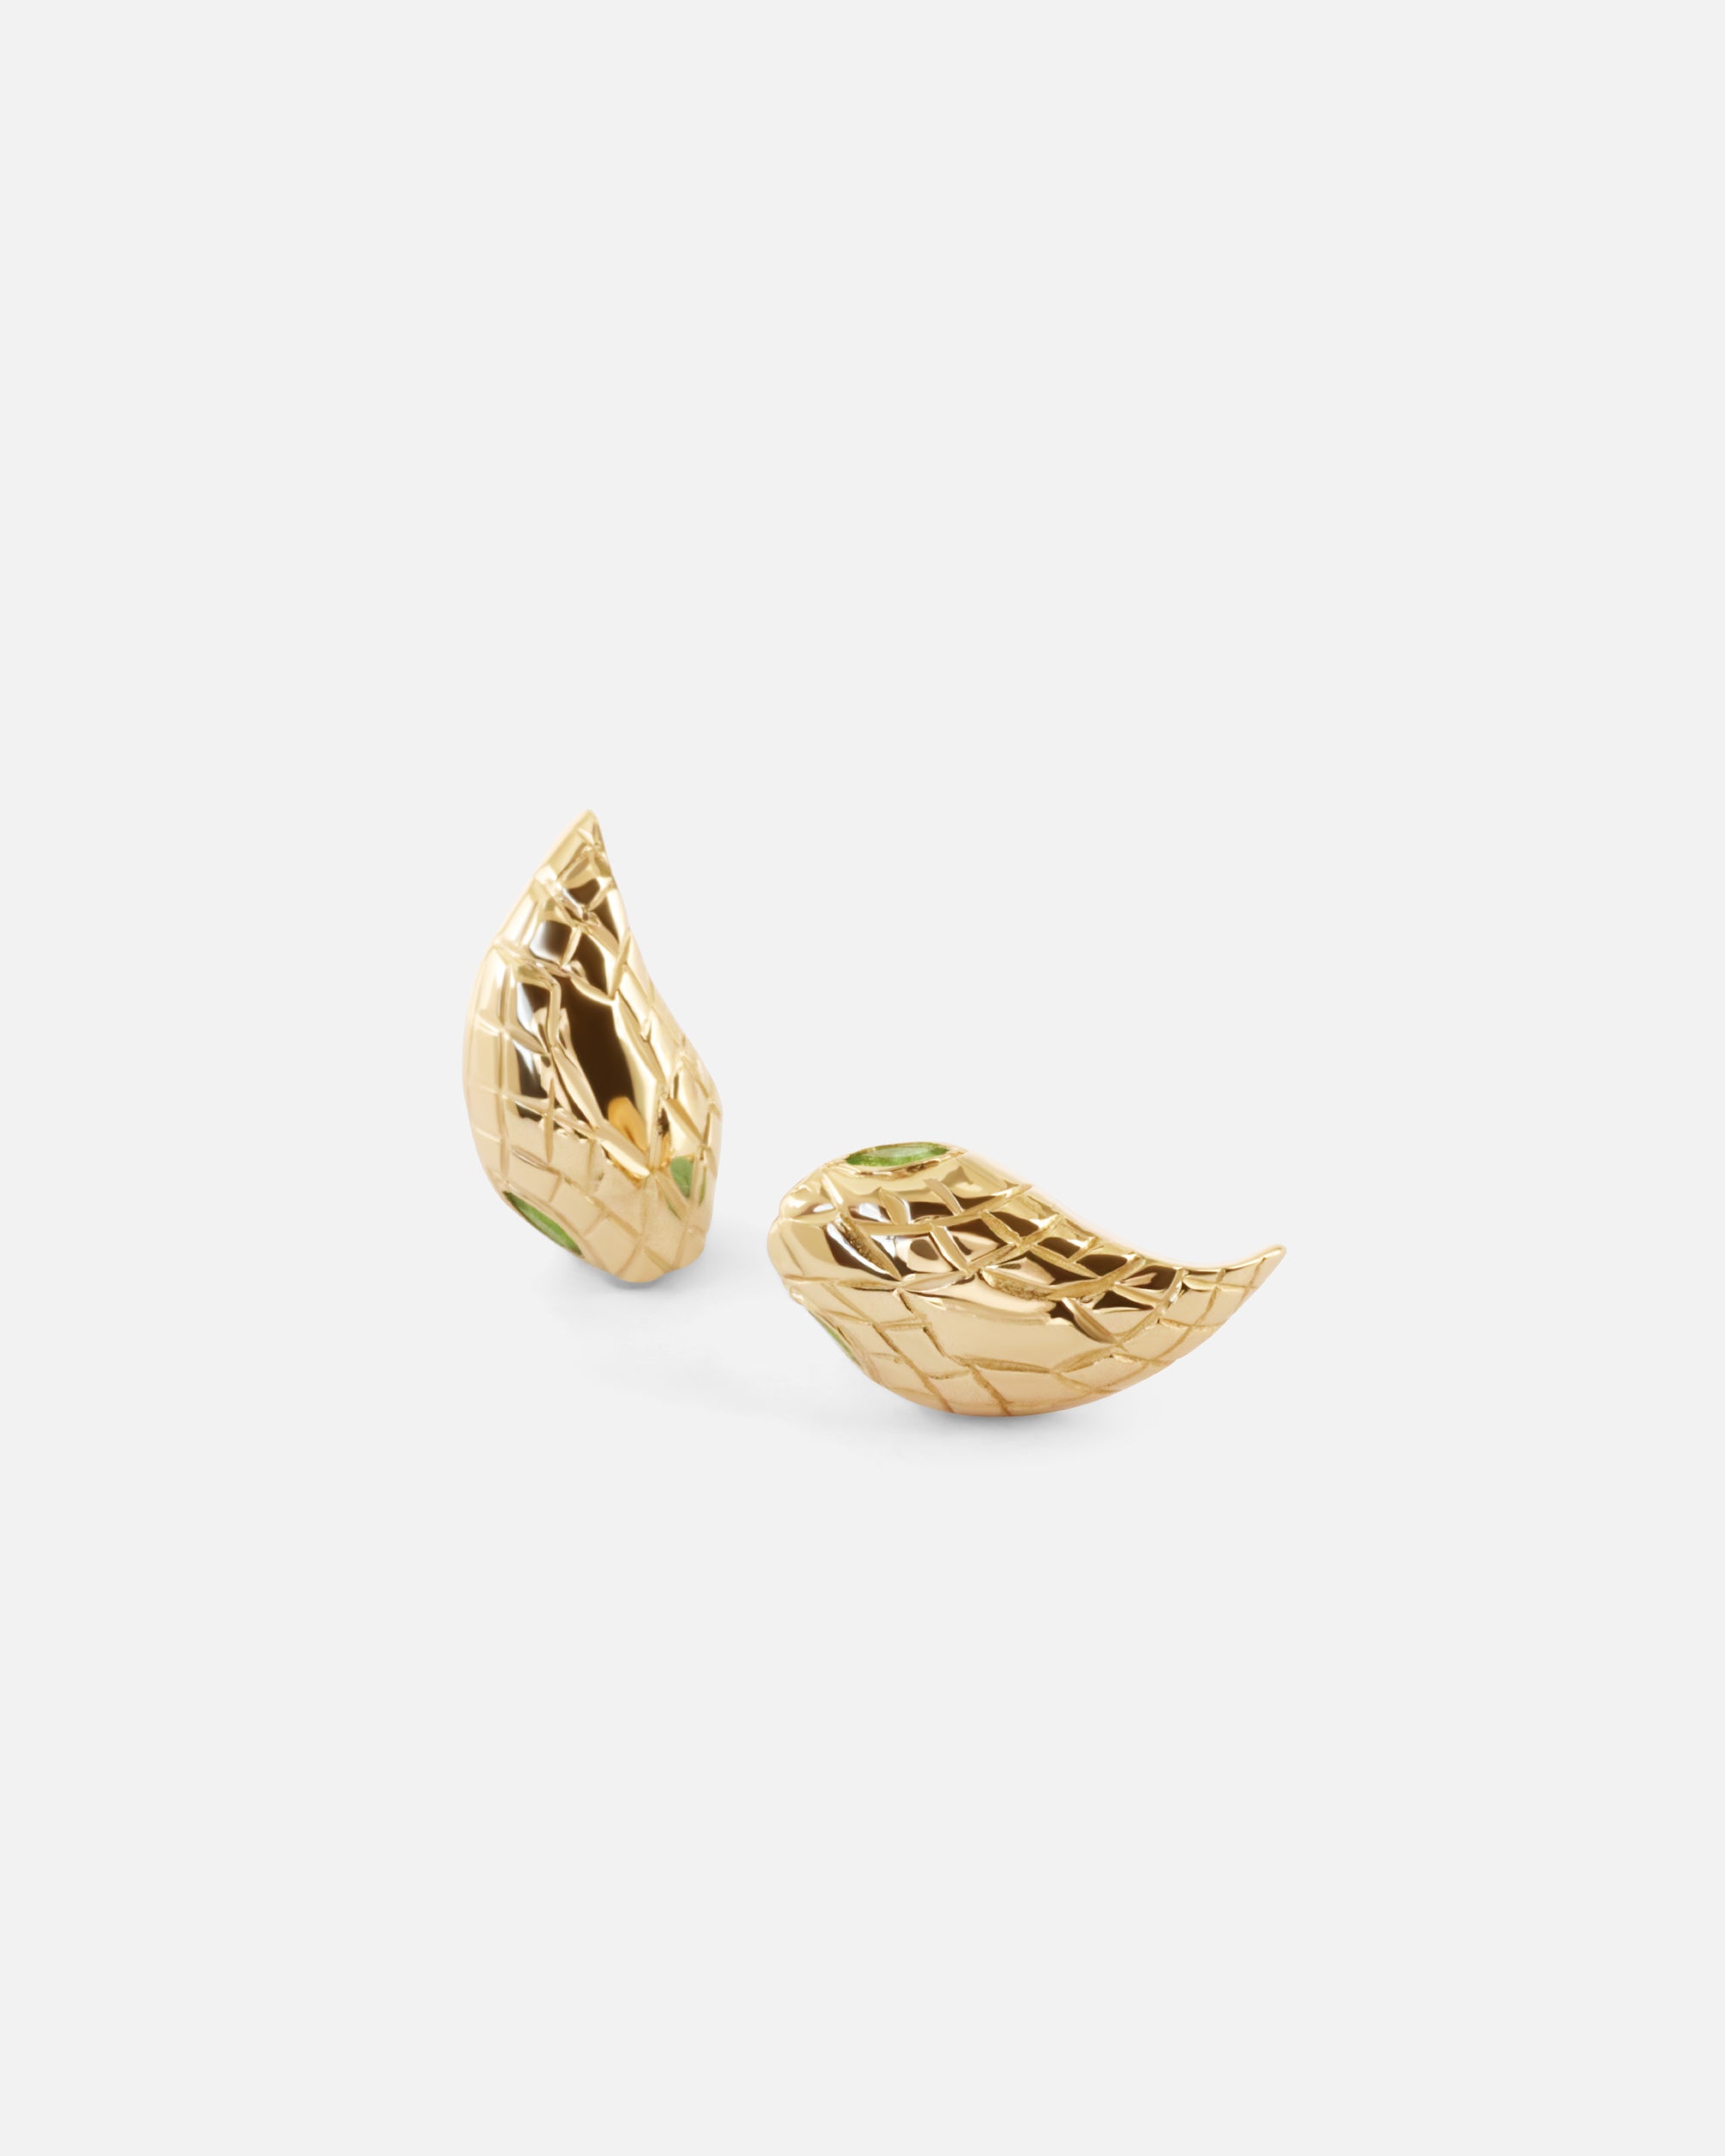 Ornata Ophidia Stud Earrings By Ides in earrings Category